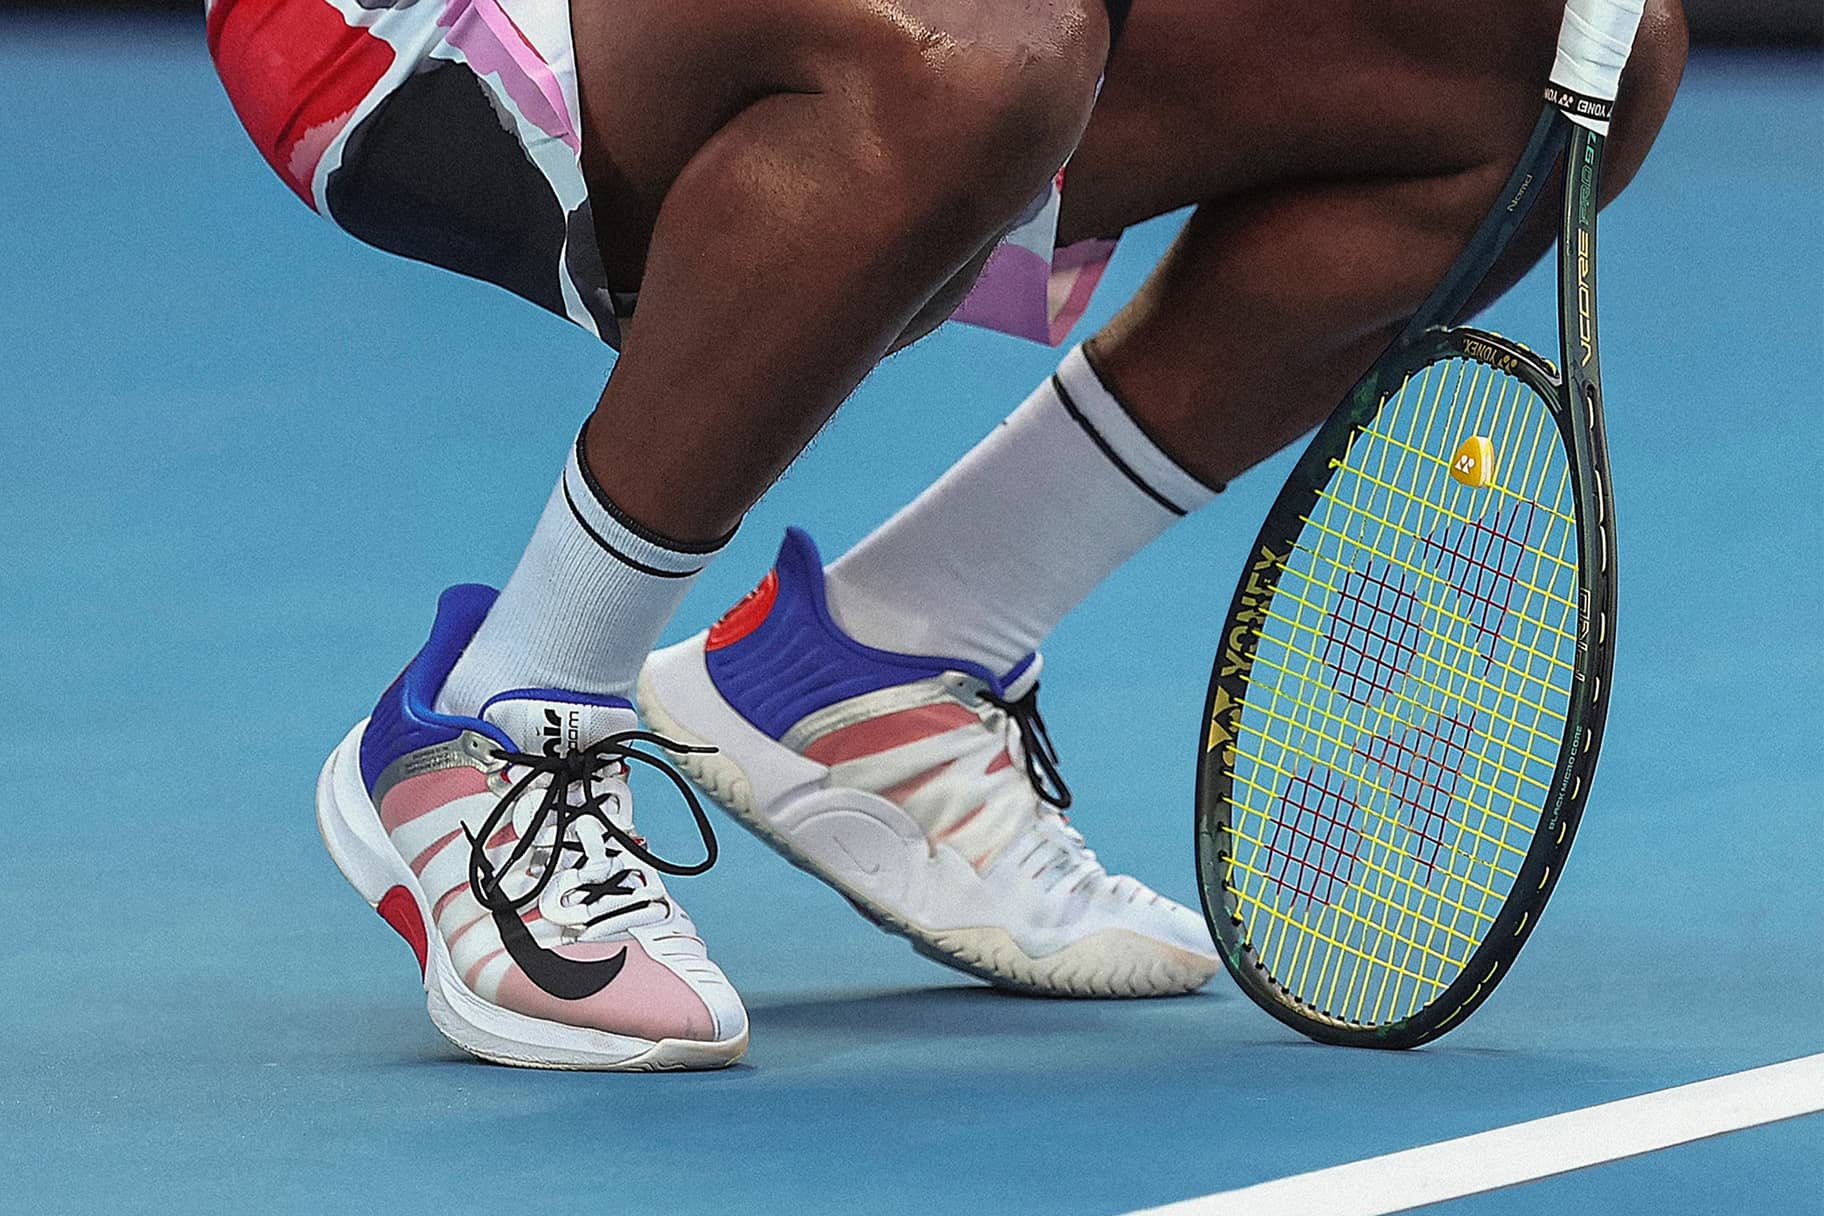 Les millors sabatilles Nike de tennis per a pista ràpida